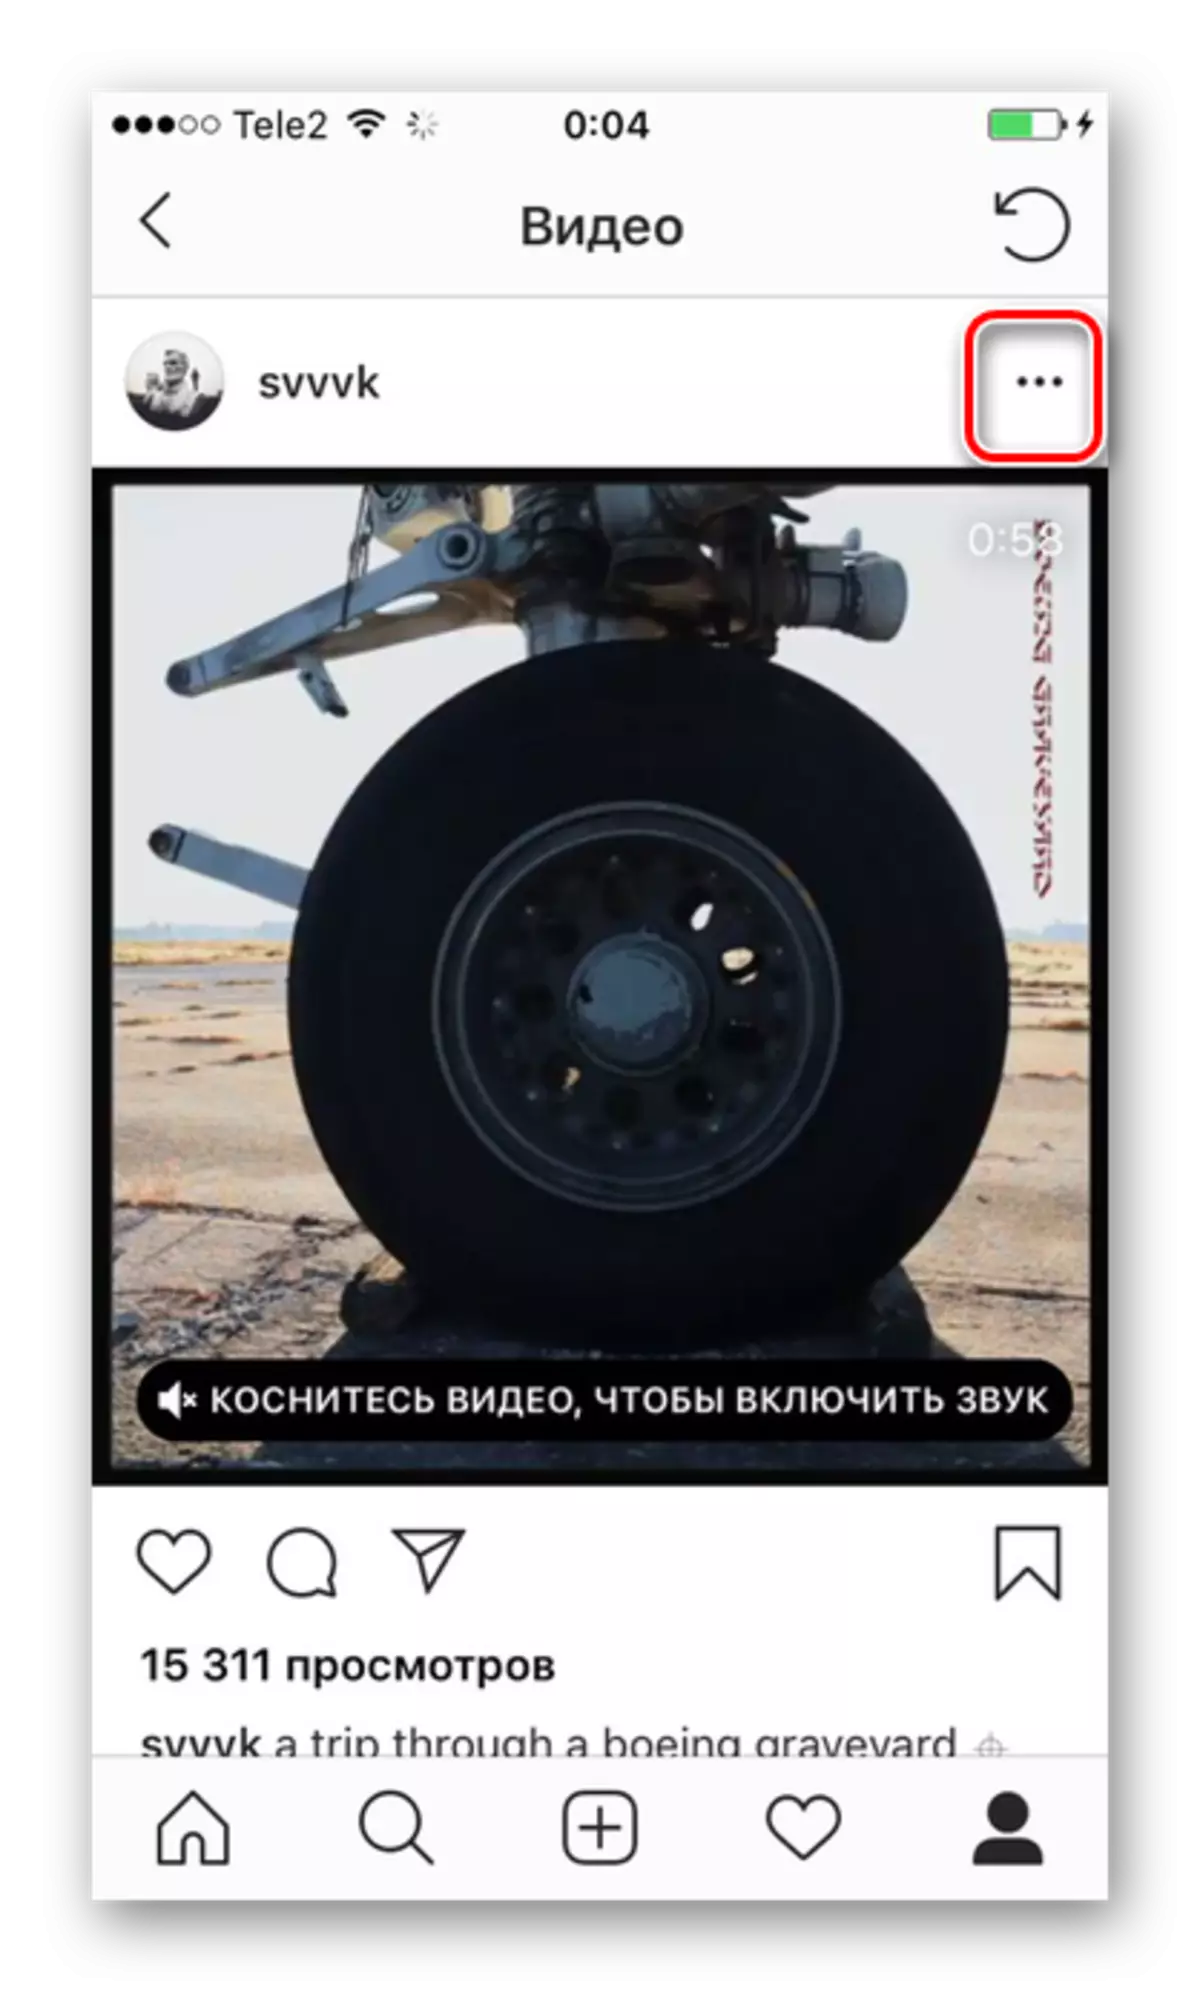 Váltson az Instagram beállításaira, hogy mentse a videót az iPhone-on